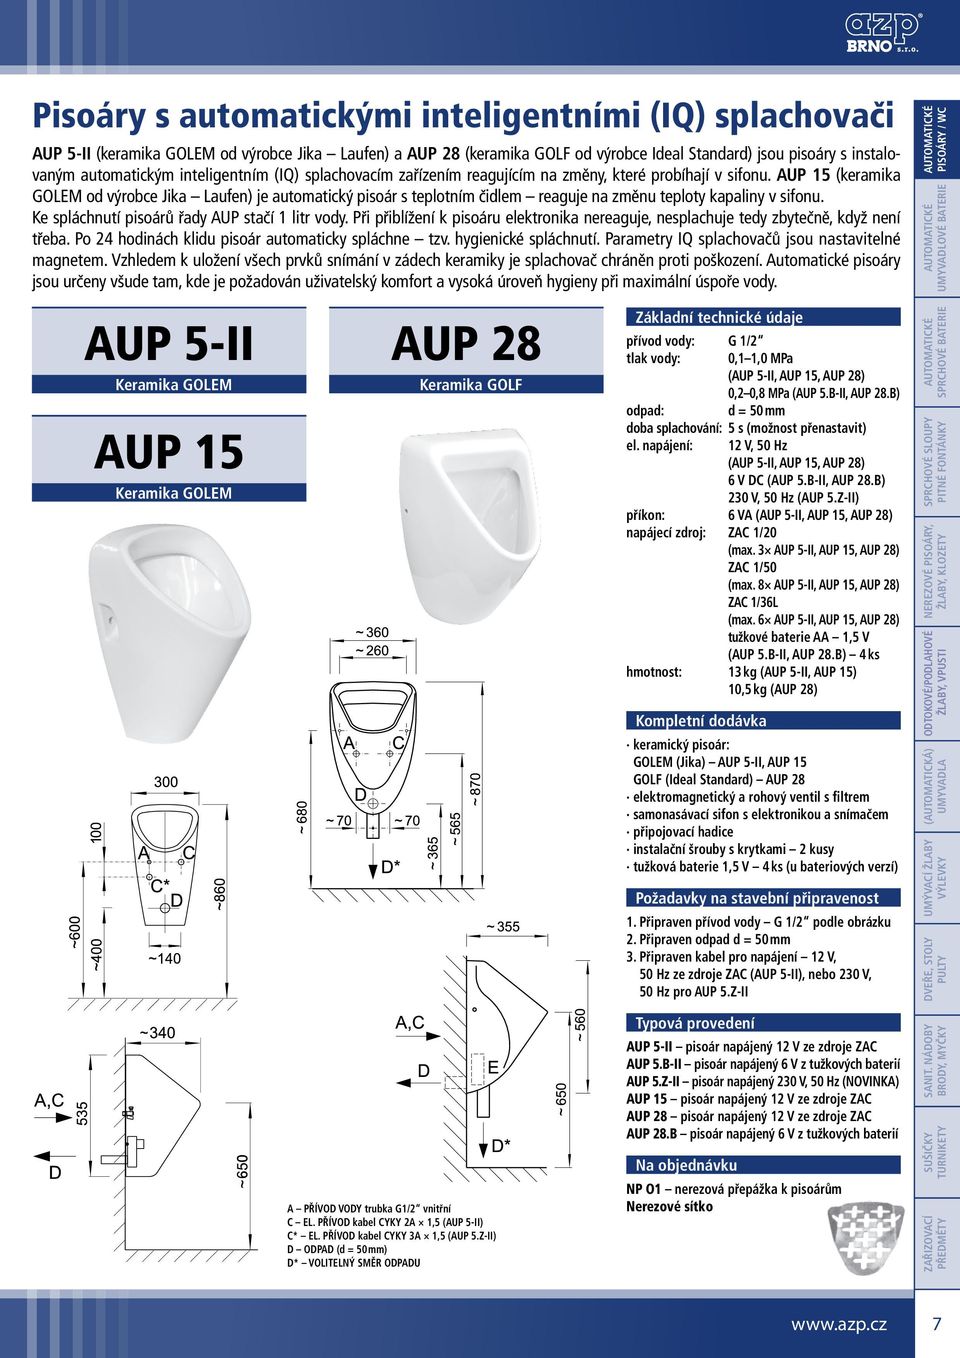 AUP 15 (keramika GOLEM od výrobce Jika Laufen) je automatický pisoár s teplotním čidlem reaguje na změnu teploty kapaliny v sifonu. Ke spláchnutí pisoárů řady AUP stačí 1 litr vody.